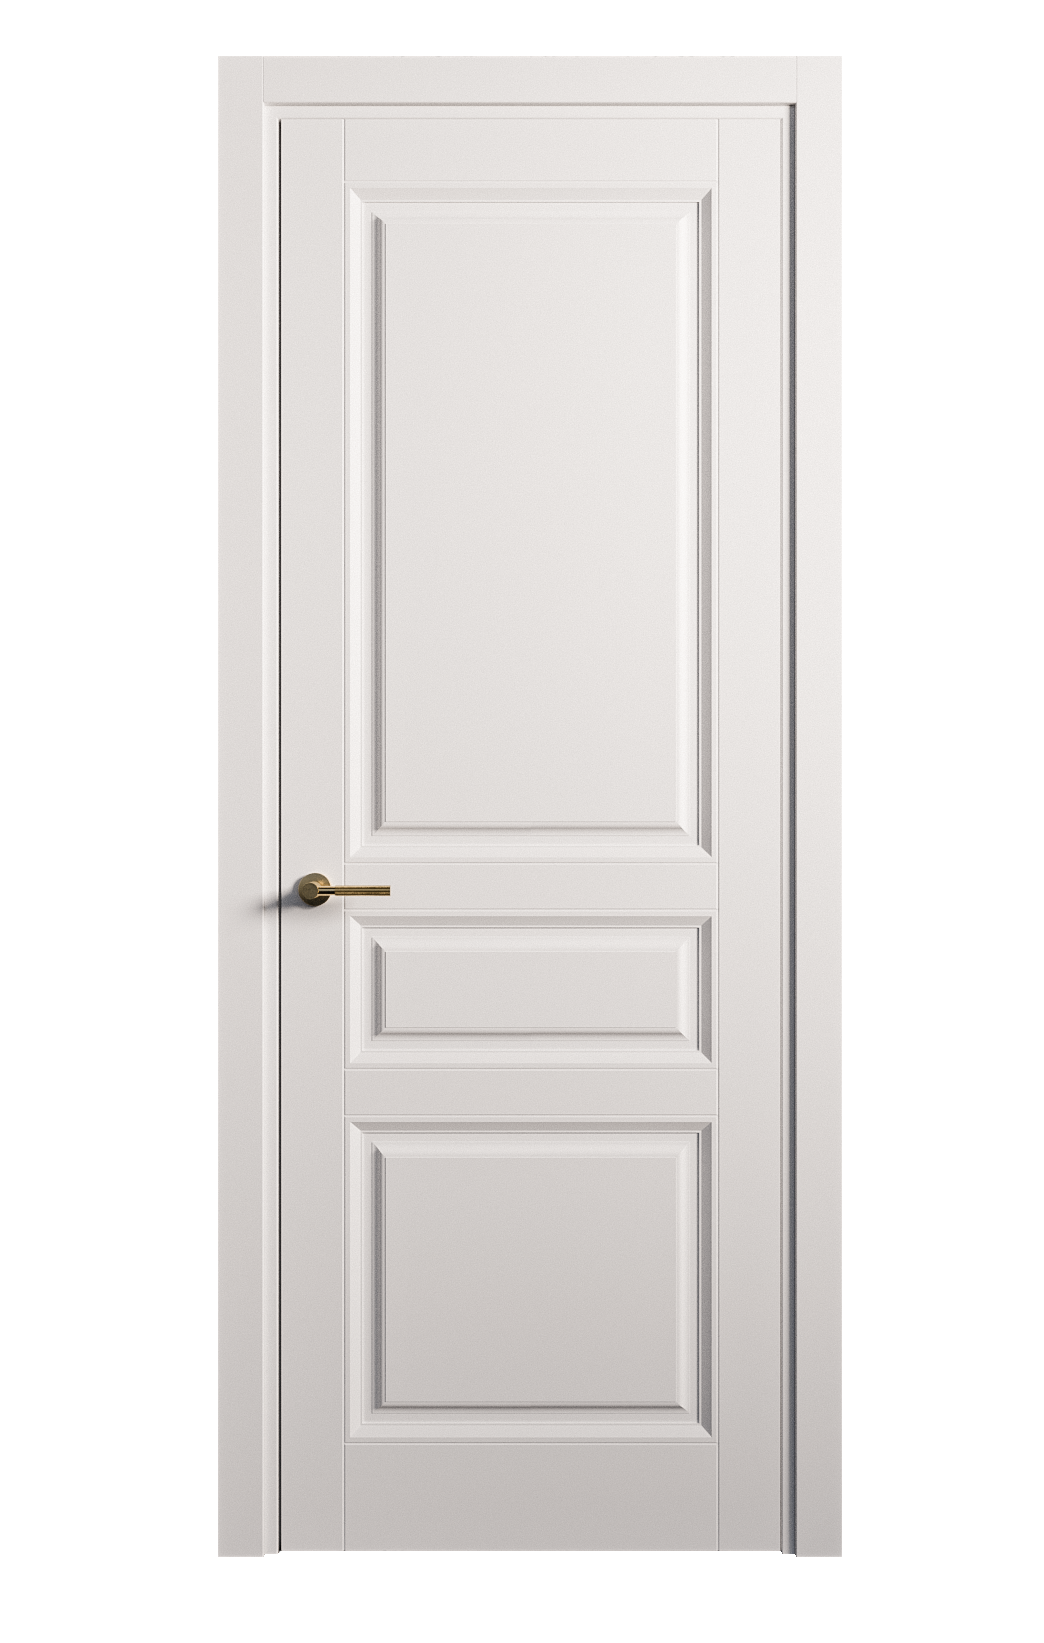 Межкомнатная дверь Venezia-2 глухая эмаль ral 9003 25747